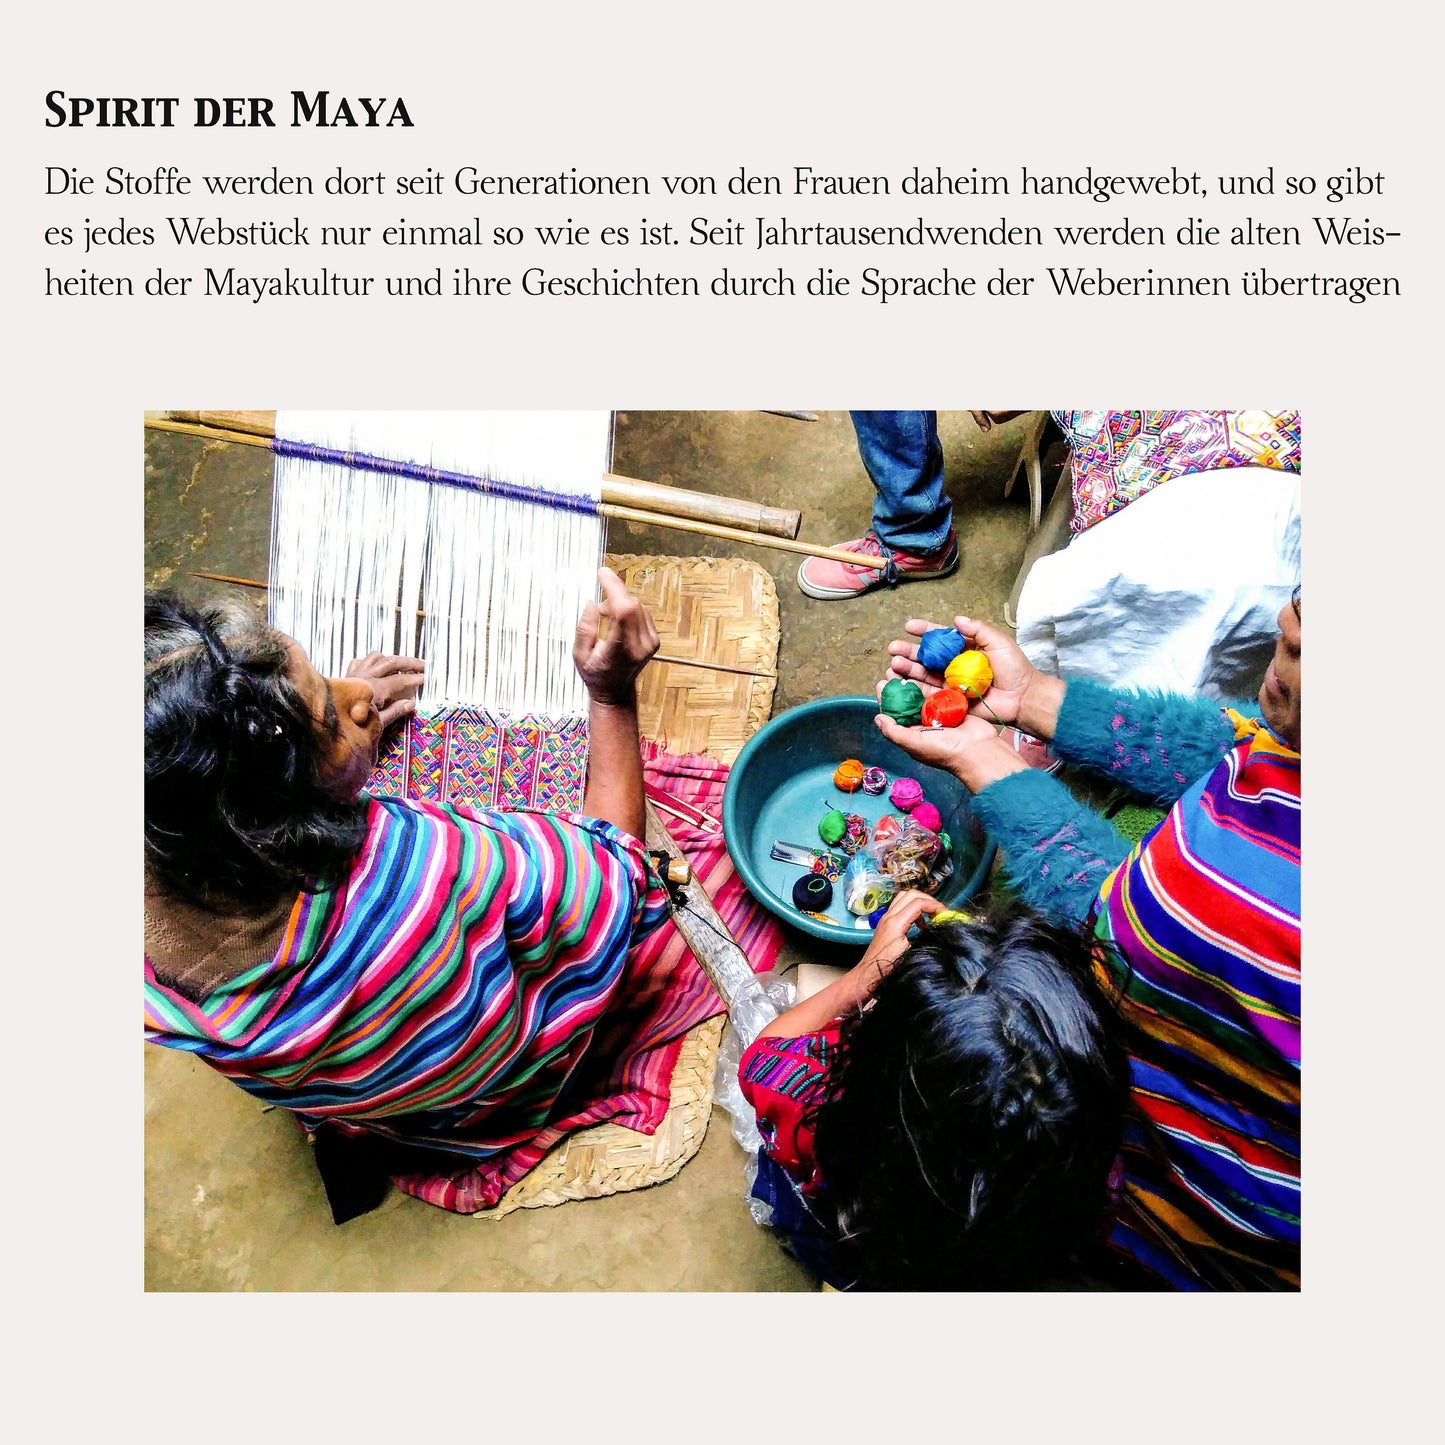 Seltener Stoff, grau/schwarz ,100x120cm Unikat aus Guatemala, handgewebt von Mayafrauen, Nähprojekte, wie Kissen, Westen, Taschen